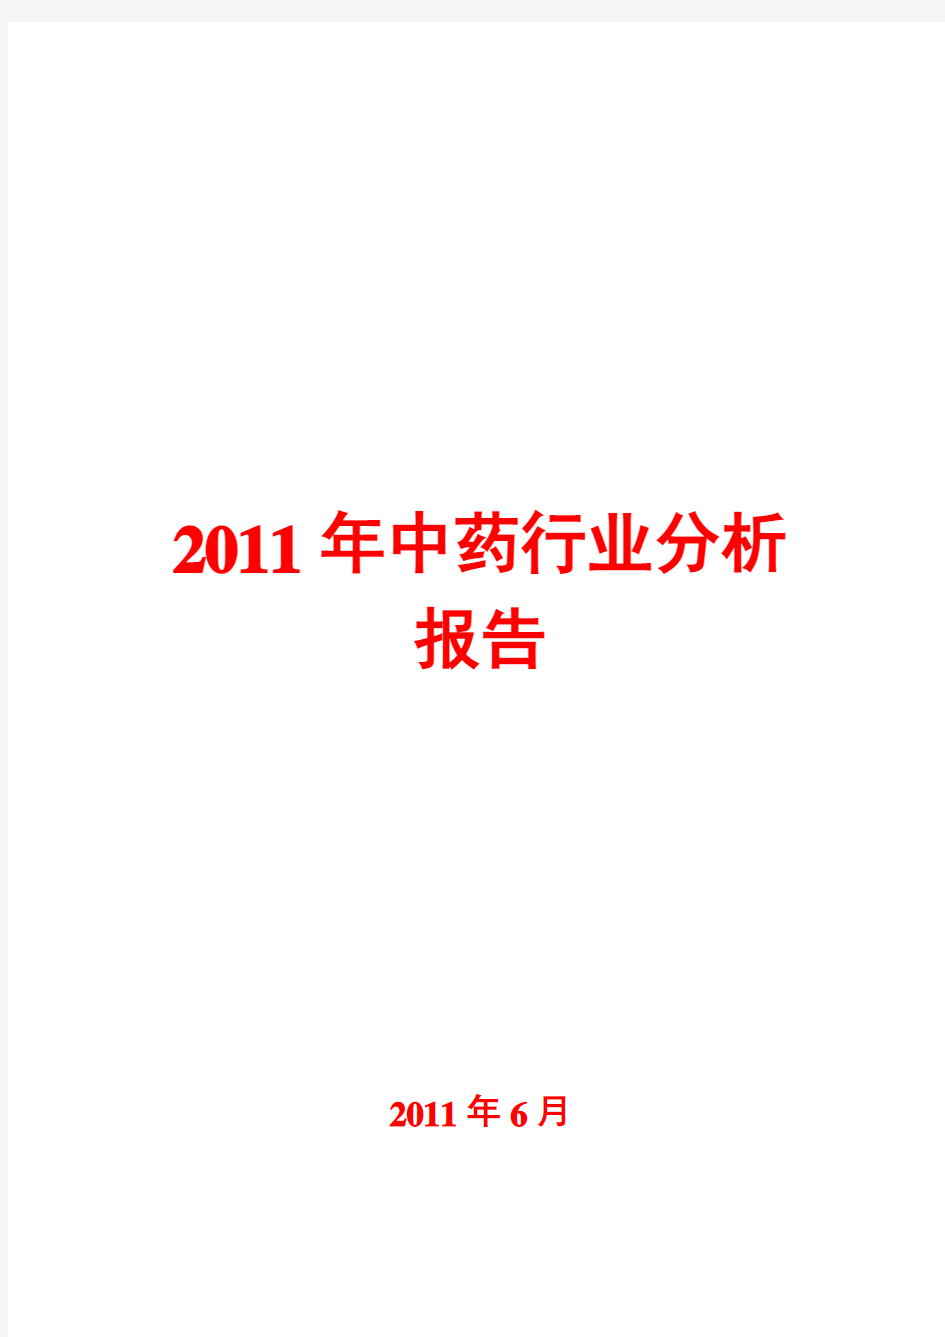 中药行业分析报告2011